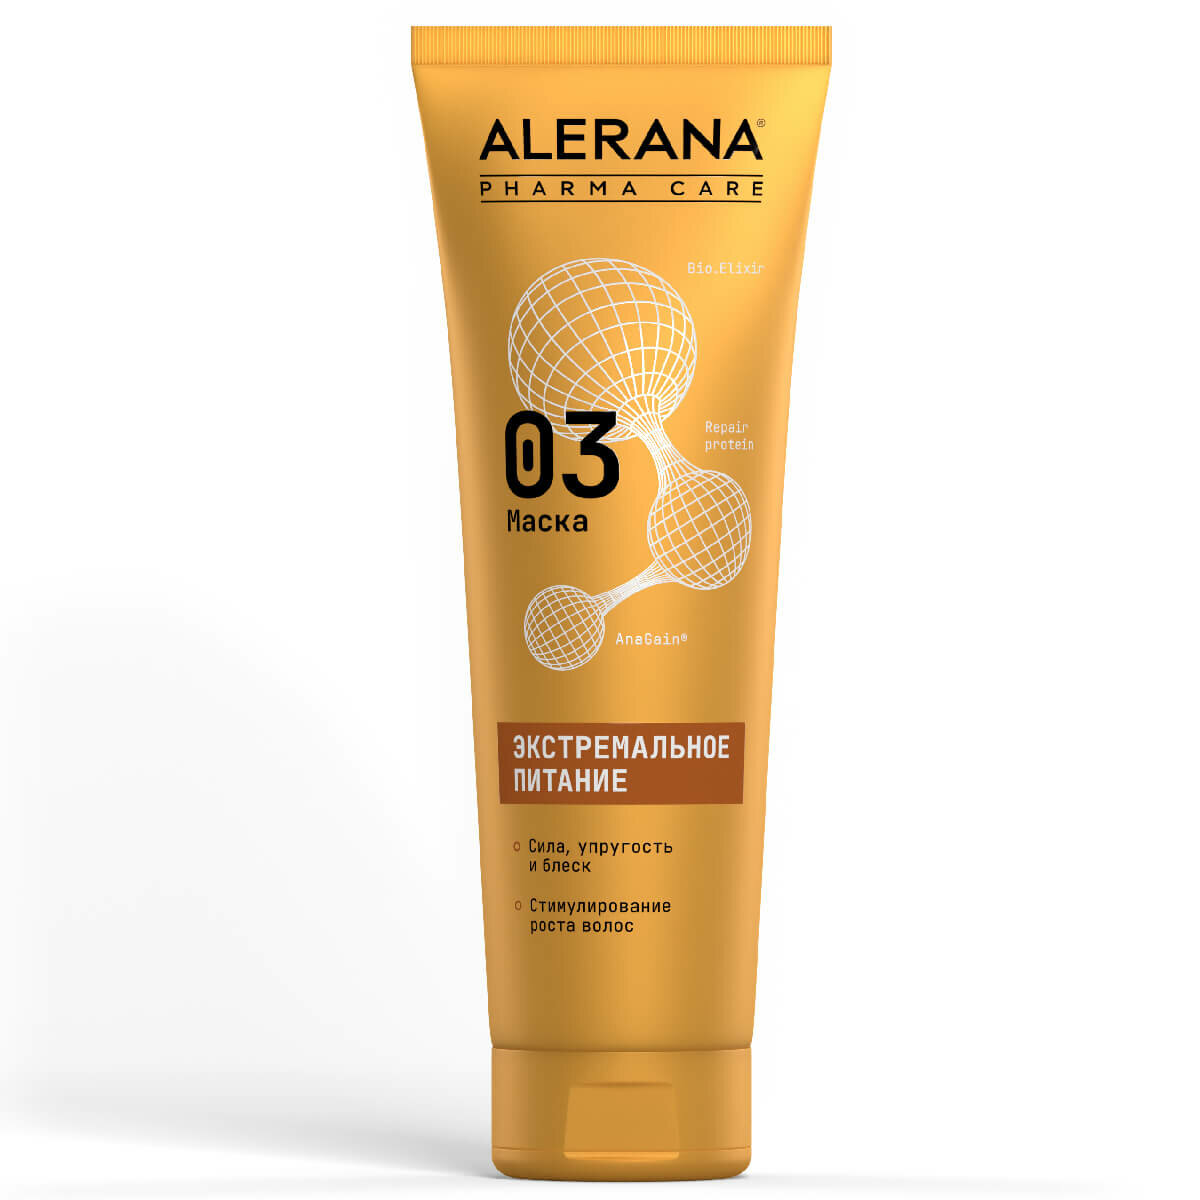 Alerana Pharma Care Маска для волос Формула экстремального питания Pharma Care, 260 мл, Alerana